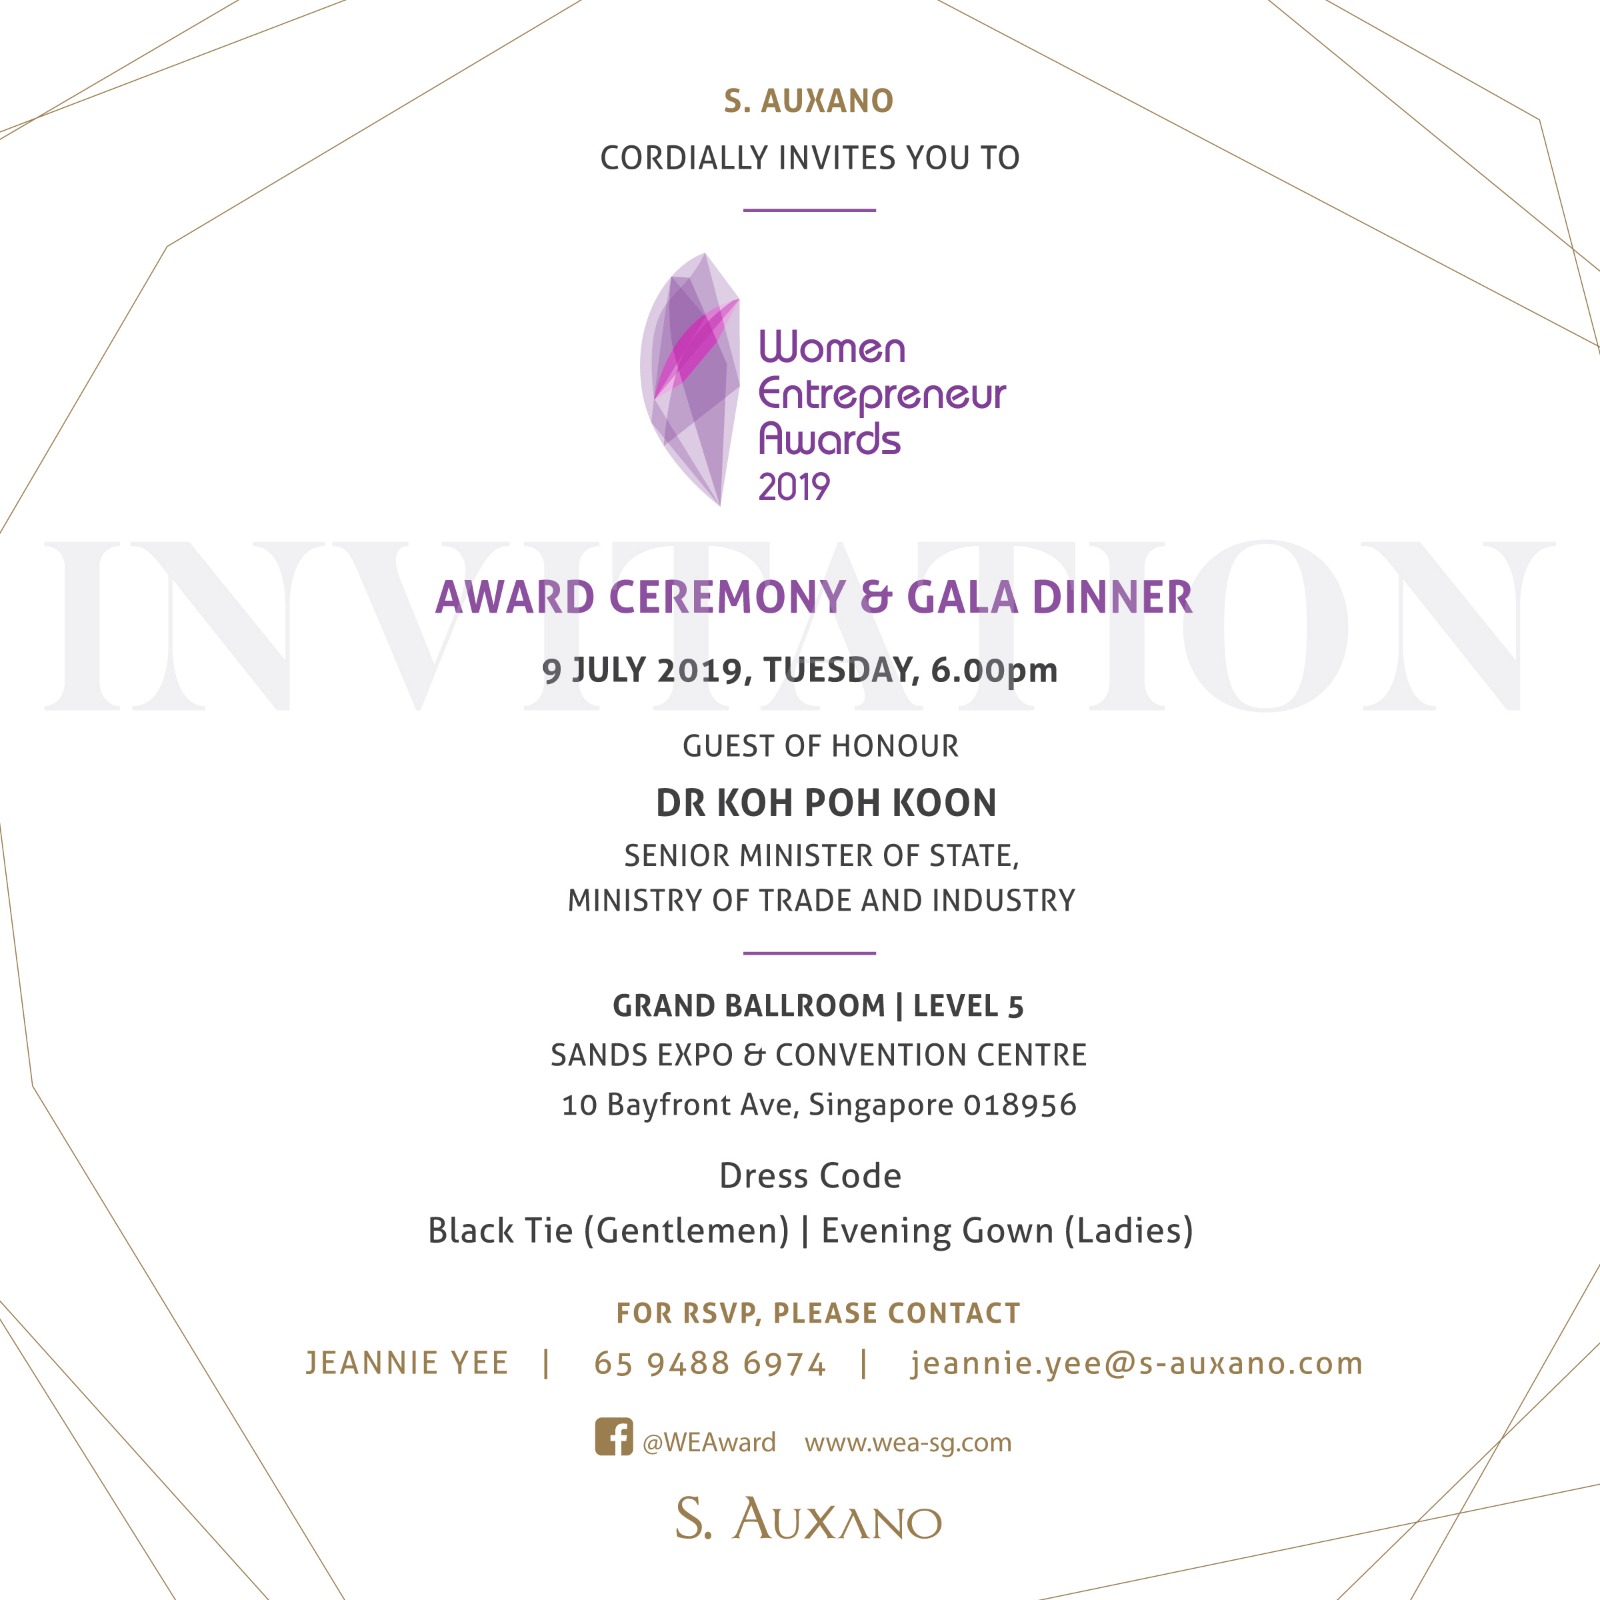 Women Entrepreneur Awards 2019 invitation